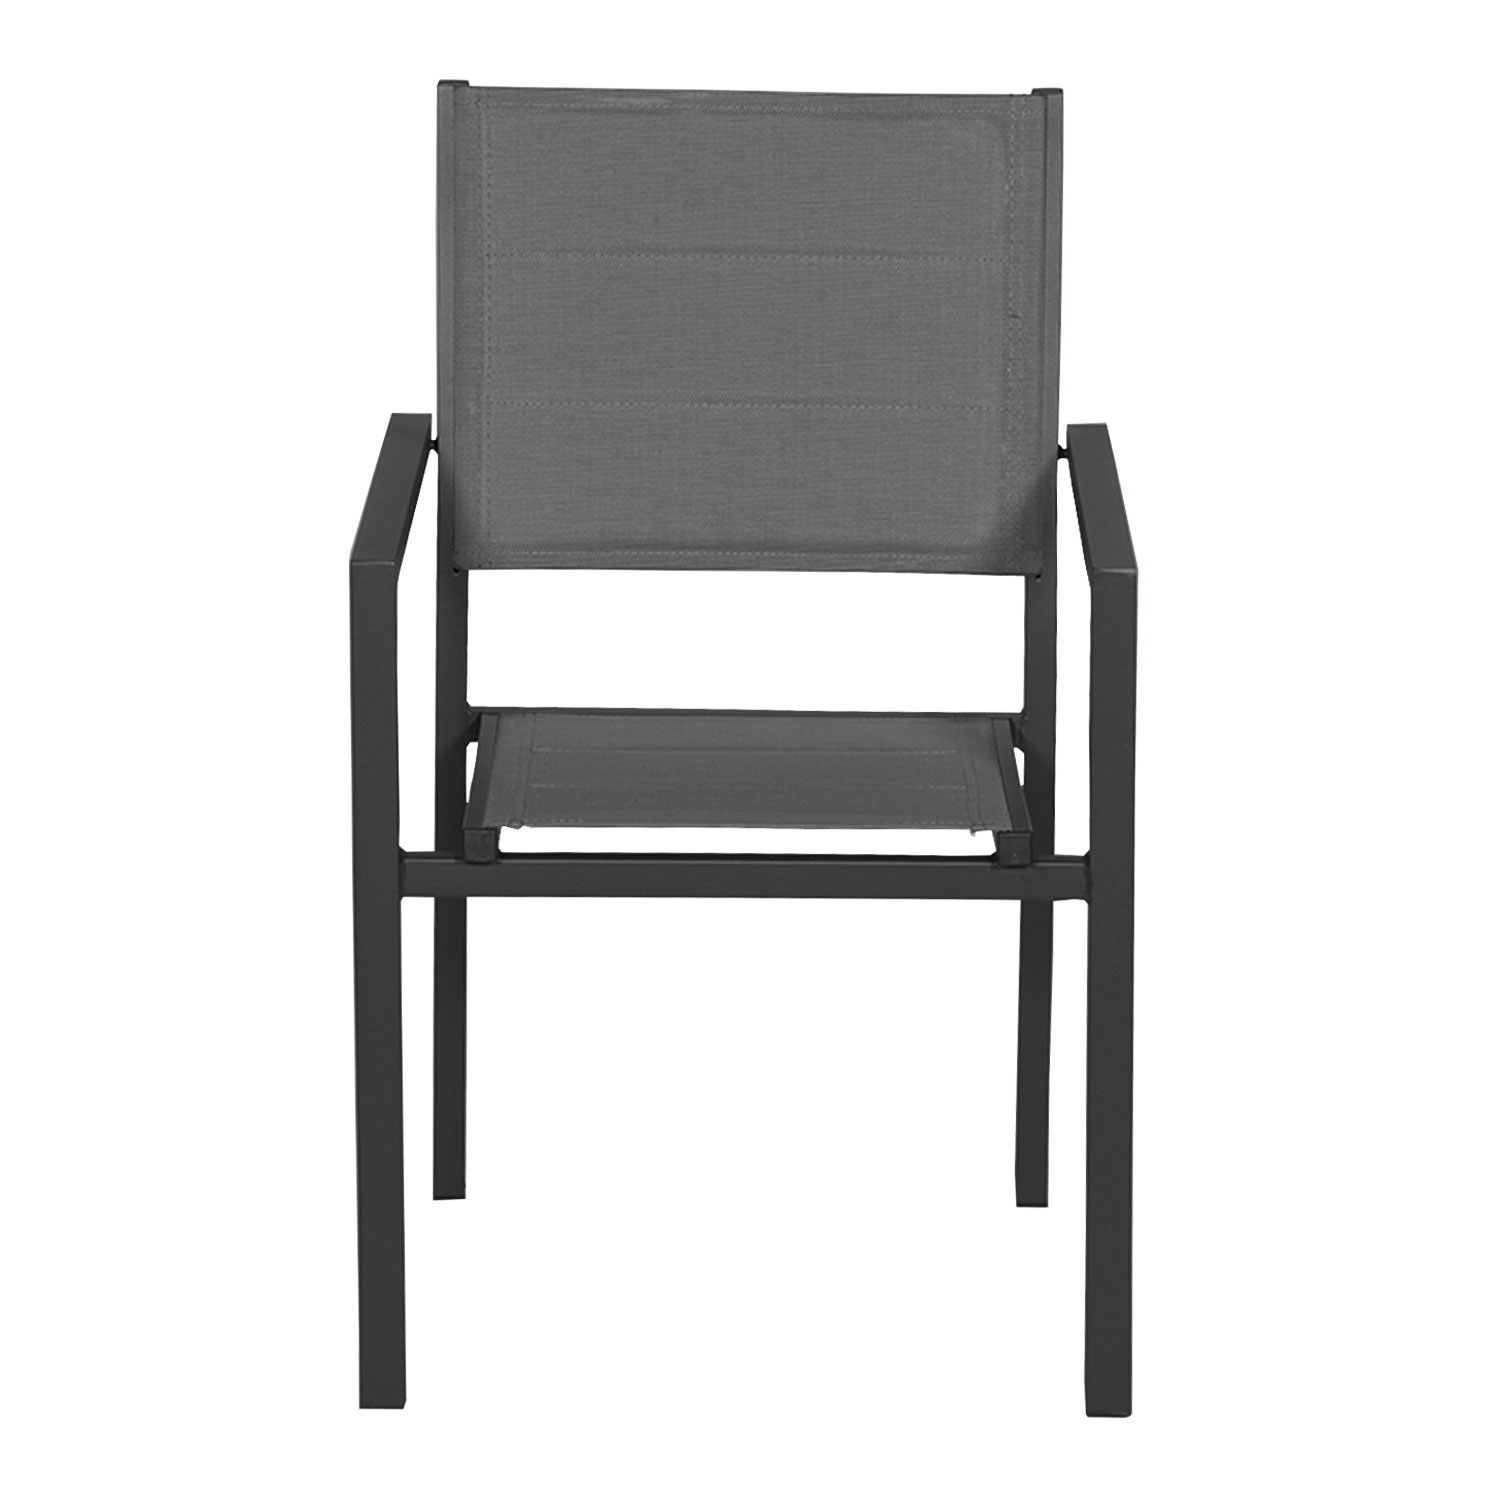 Satz von 4 gepolsterten Stühlen aus anthrazitfarbenem Aluminium - graues Textilene